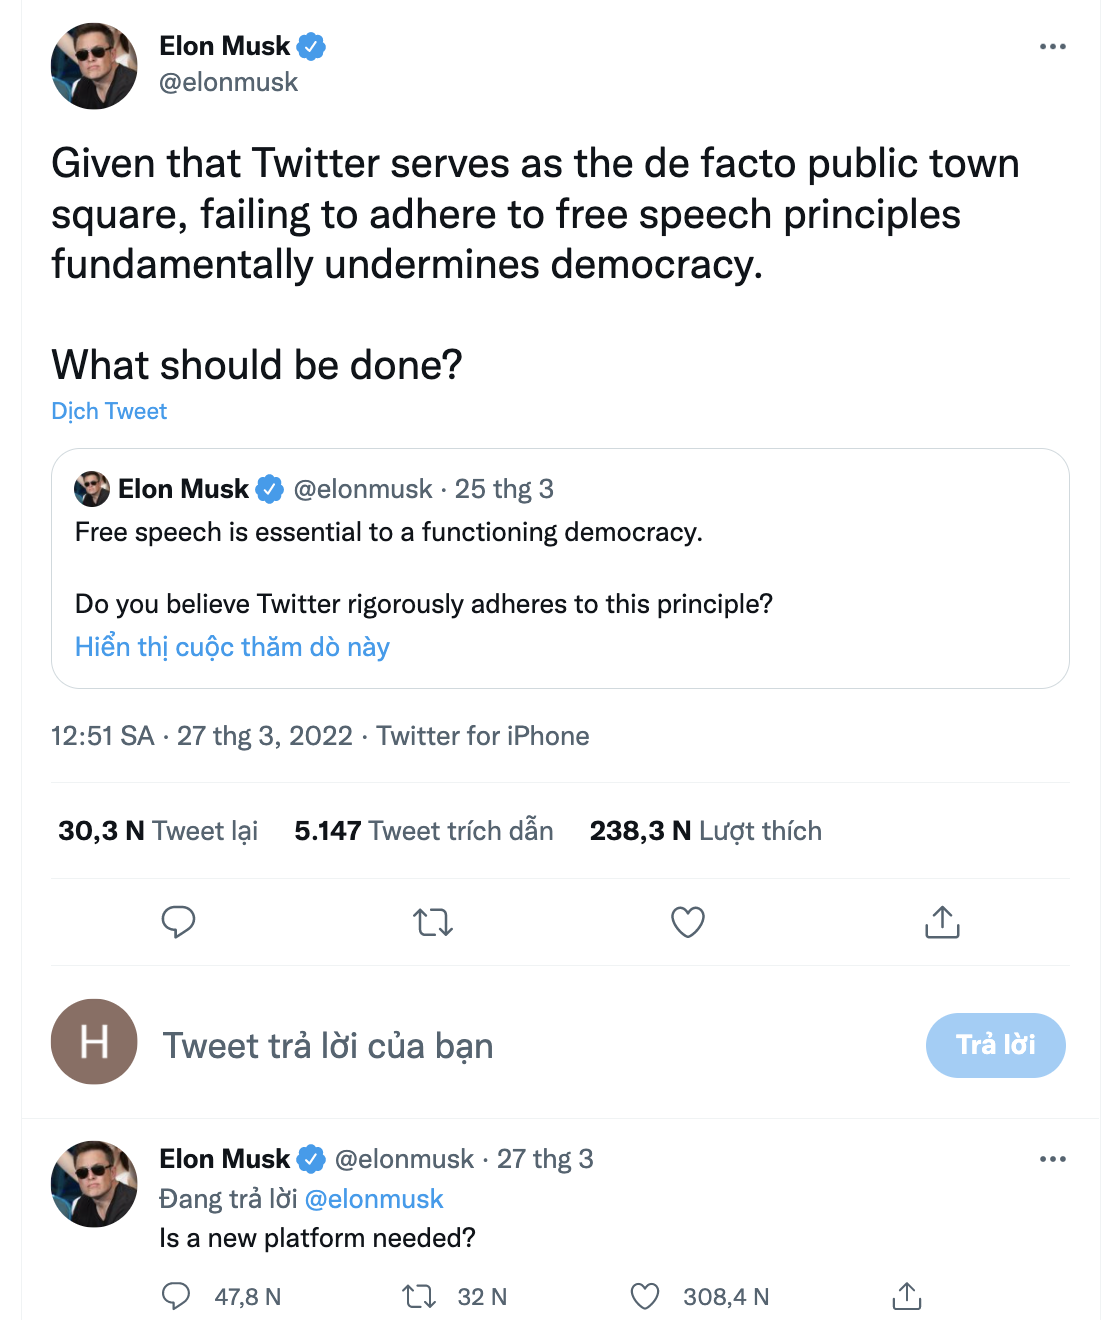 Kết quả cuộc khảo sát liệu Twitter có đảm bảo quyền dân chủ, tự do ngôn luận thôi thúc Elon Musk lên dự định thành lập mạng xã hội riêng. Ảnh chụp màn hình